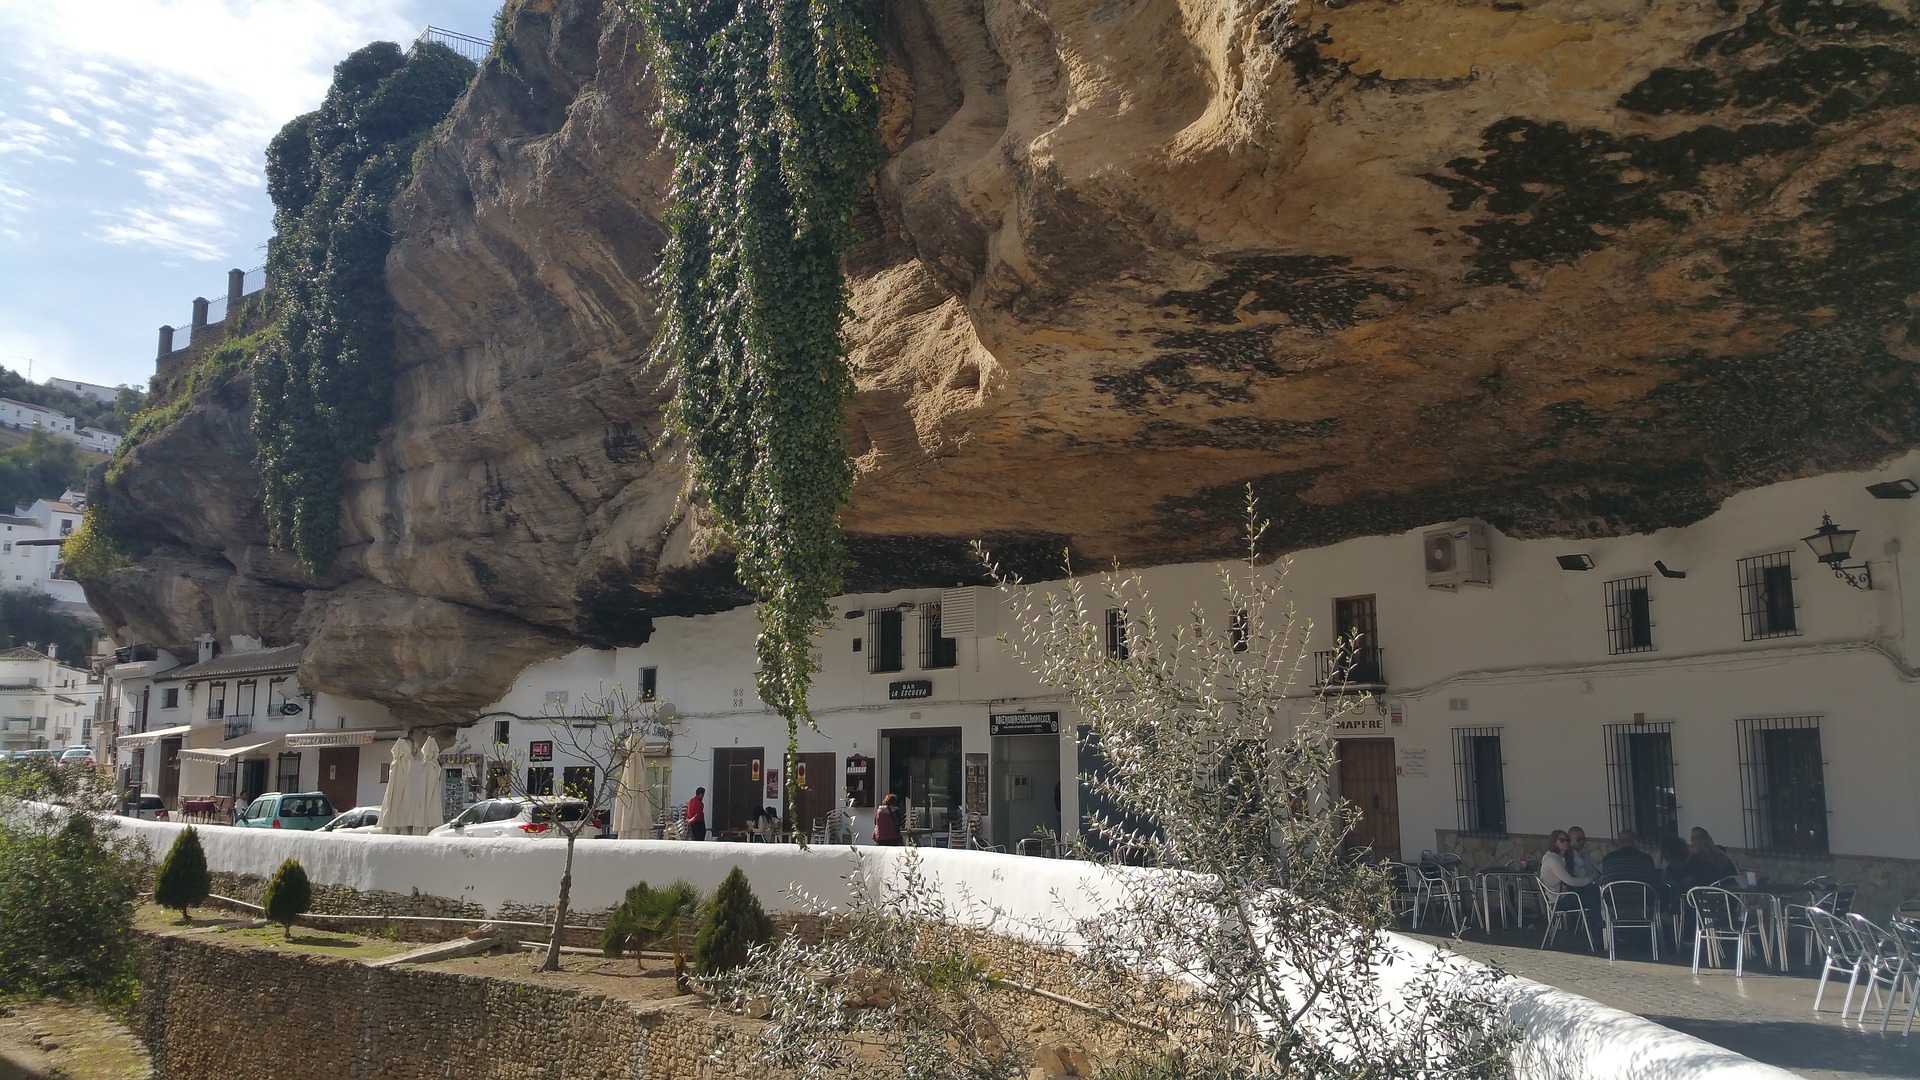 Подробнее о статье Сетениль-де-лас-Бодегас, город, построенный под скалой в Испании